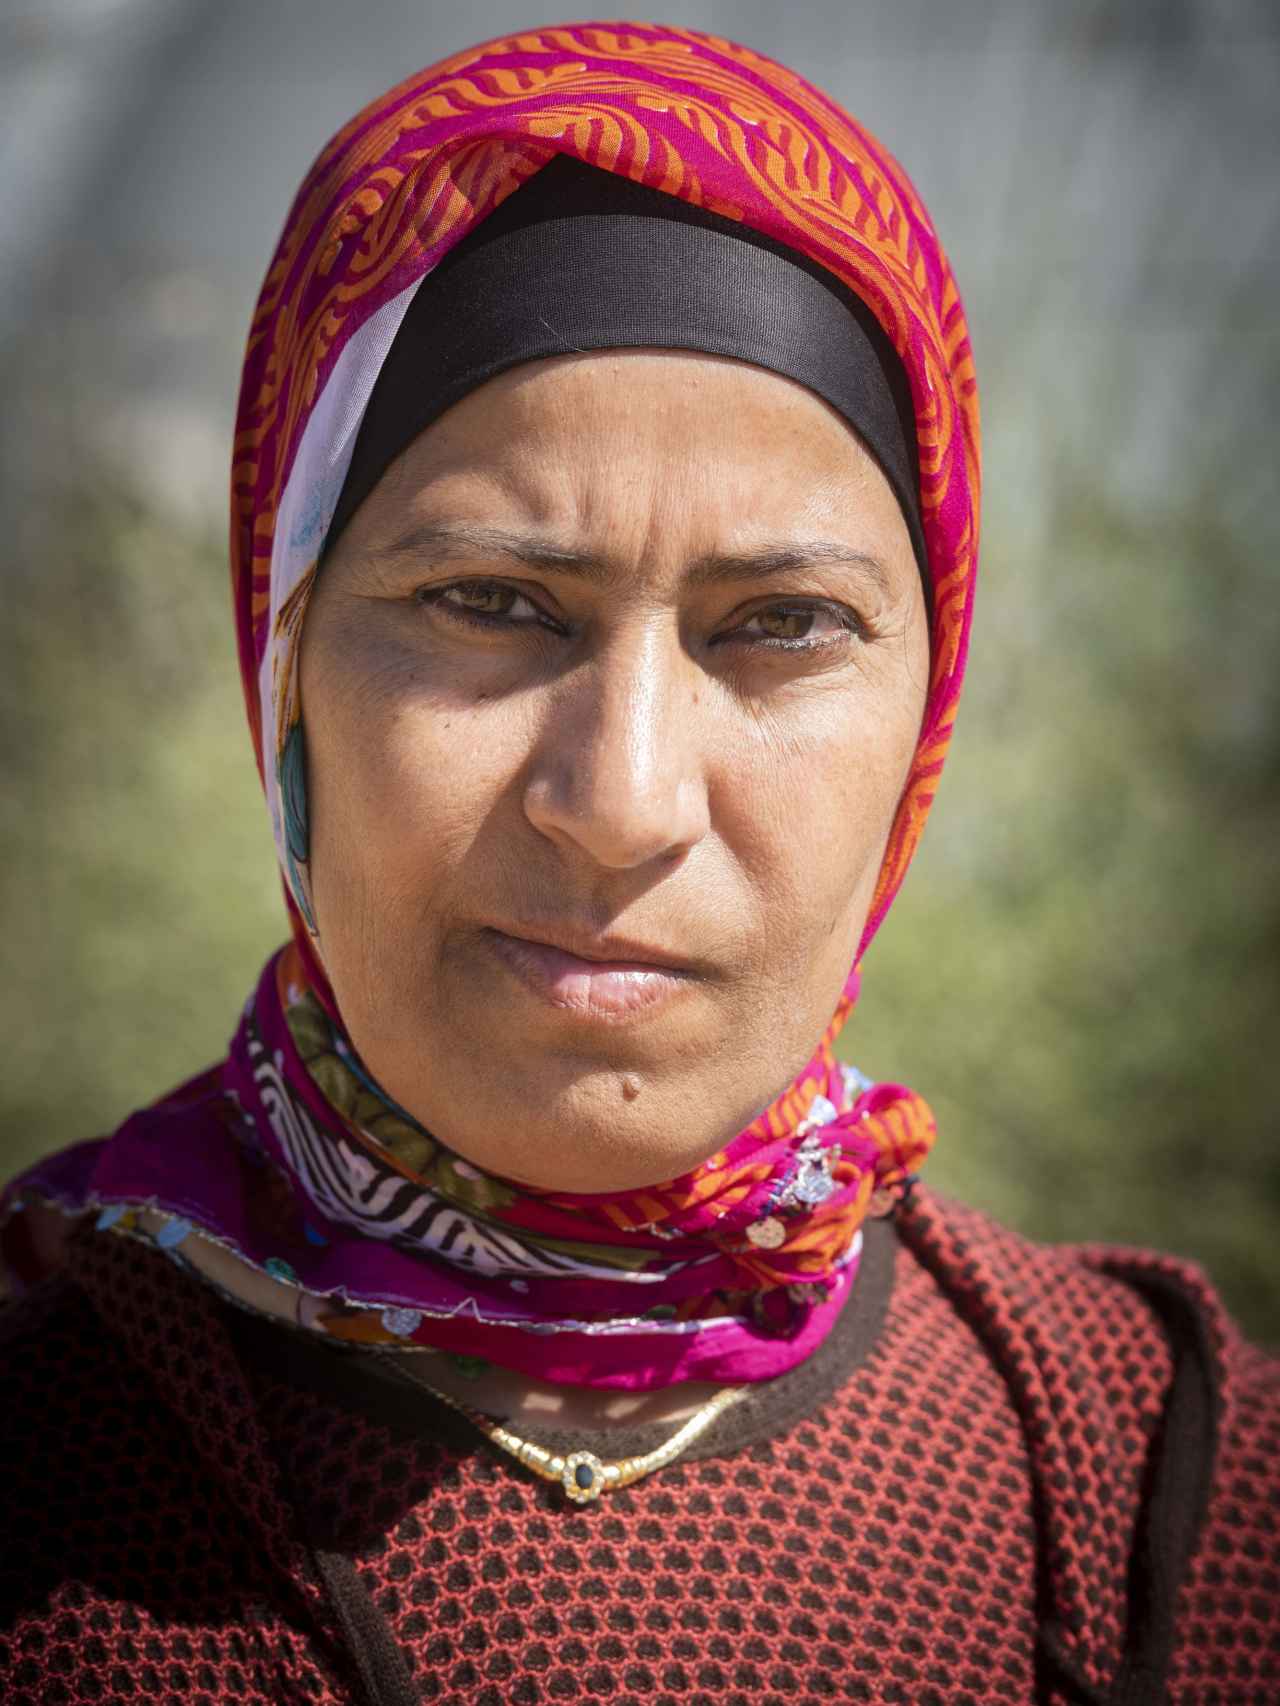 Juegan con nuestra necesidad, denuncian las mujeres. Chania Rabia nació en 1973 en Tánger, ciudad del norte de Marruecos. Es viuda. Tiene tres hijos. Dice que ha abandonado la finca en la que trabajaba porque su encargado quiere violarla. Cuenta que va a denunciar.